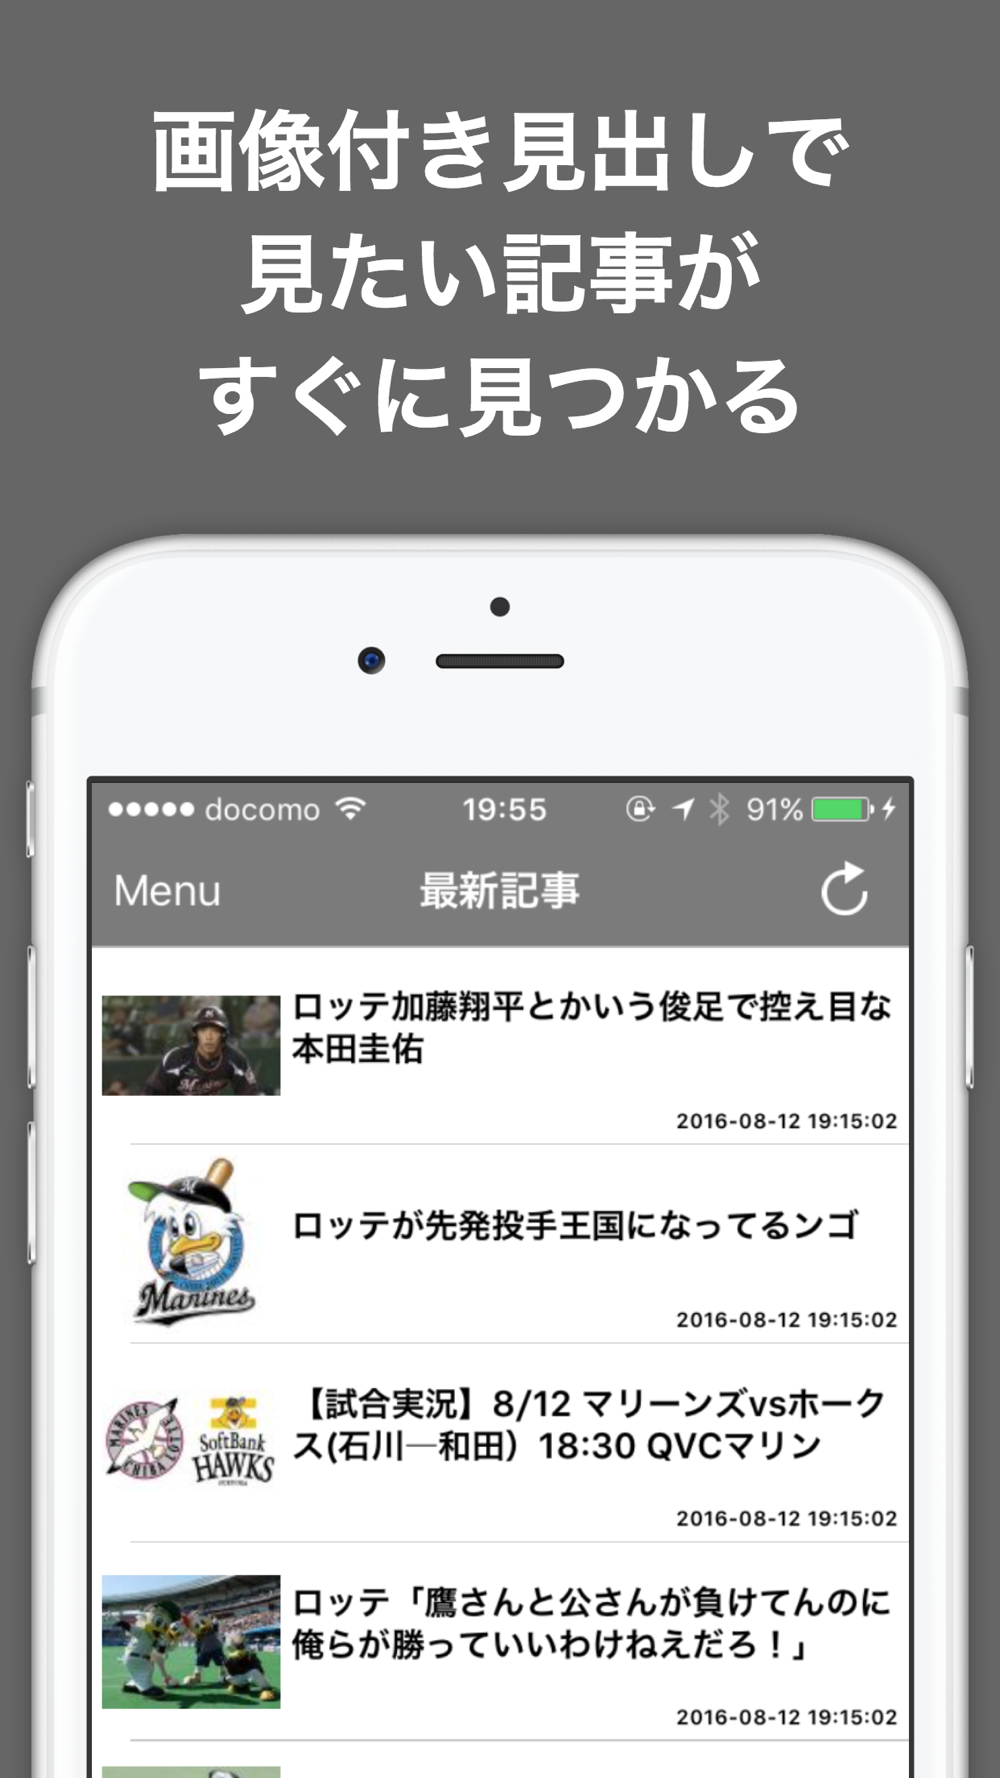 ブログまとめニュース速報 For 千葉ロッテマリーンズロッテ Free Download App For Iphone Steprimo Com